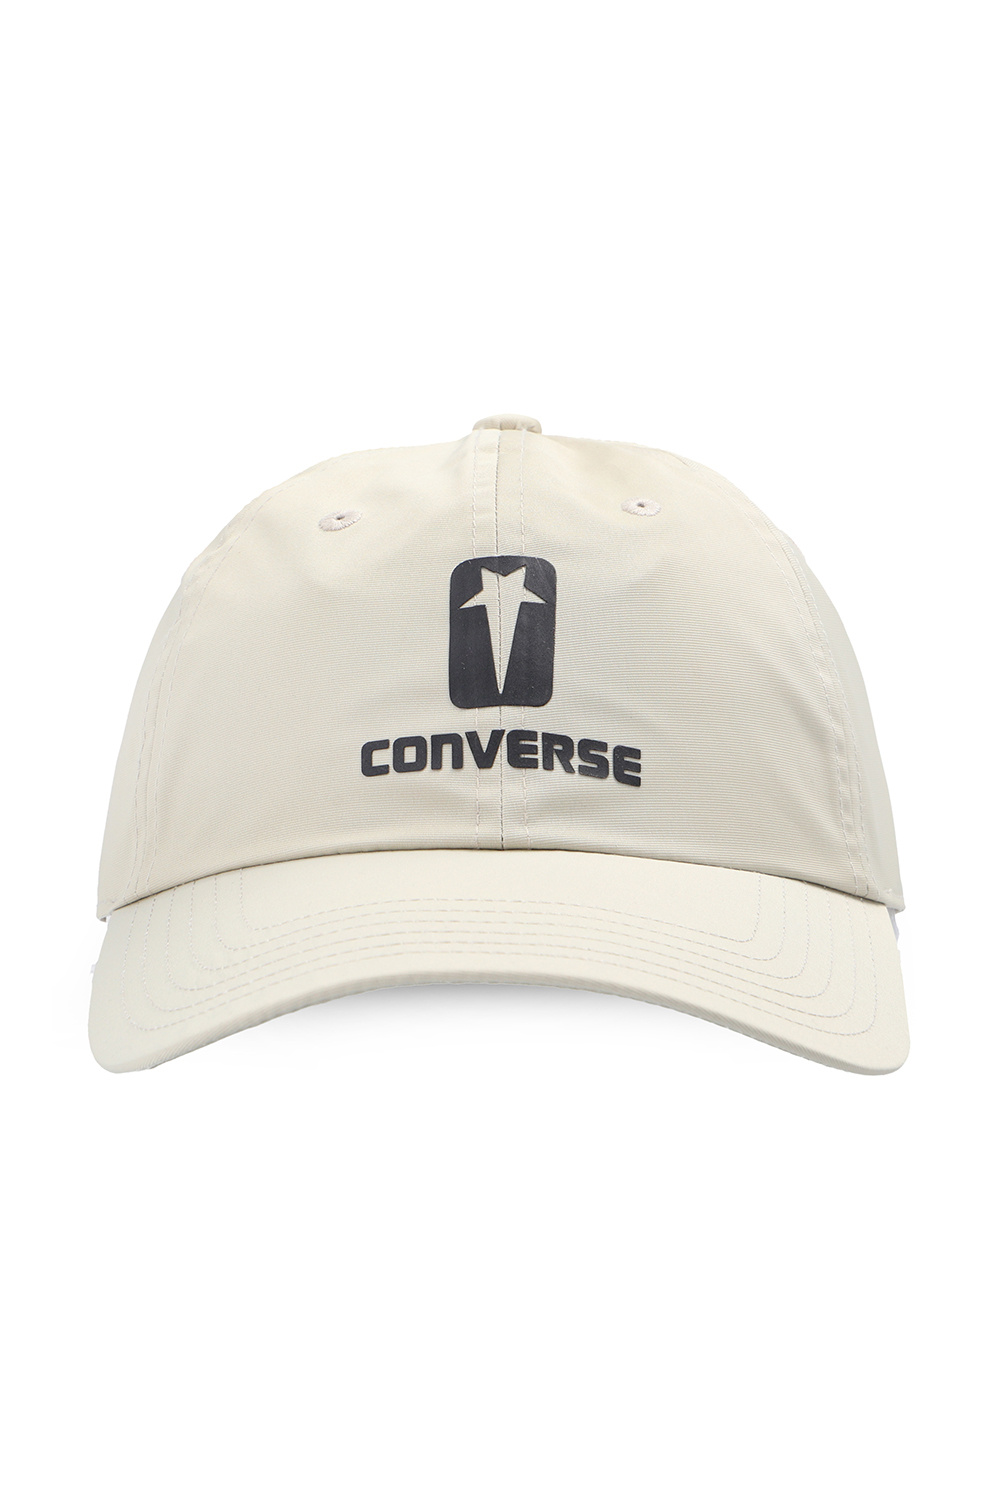 Converse Baseball cap